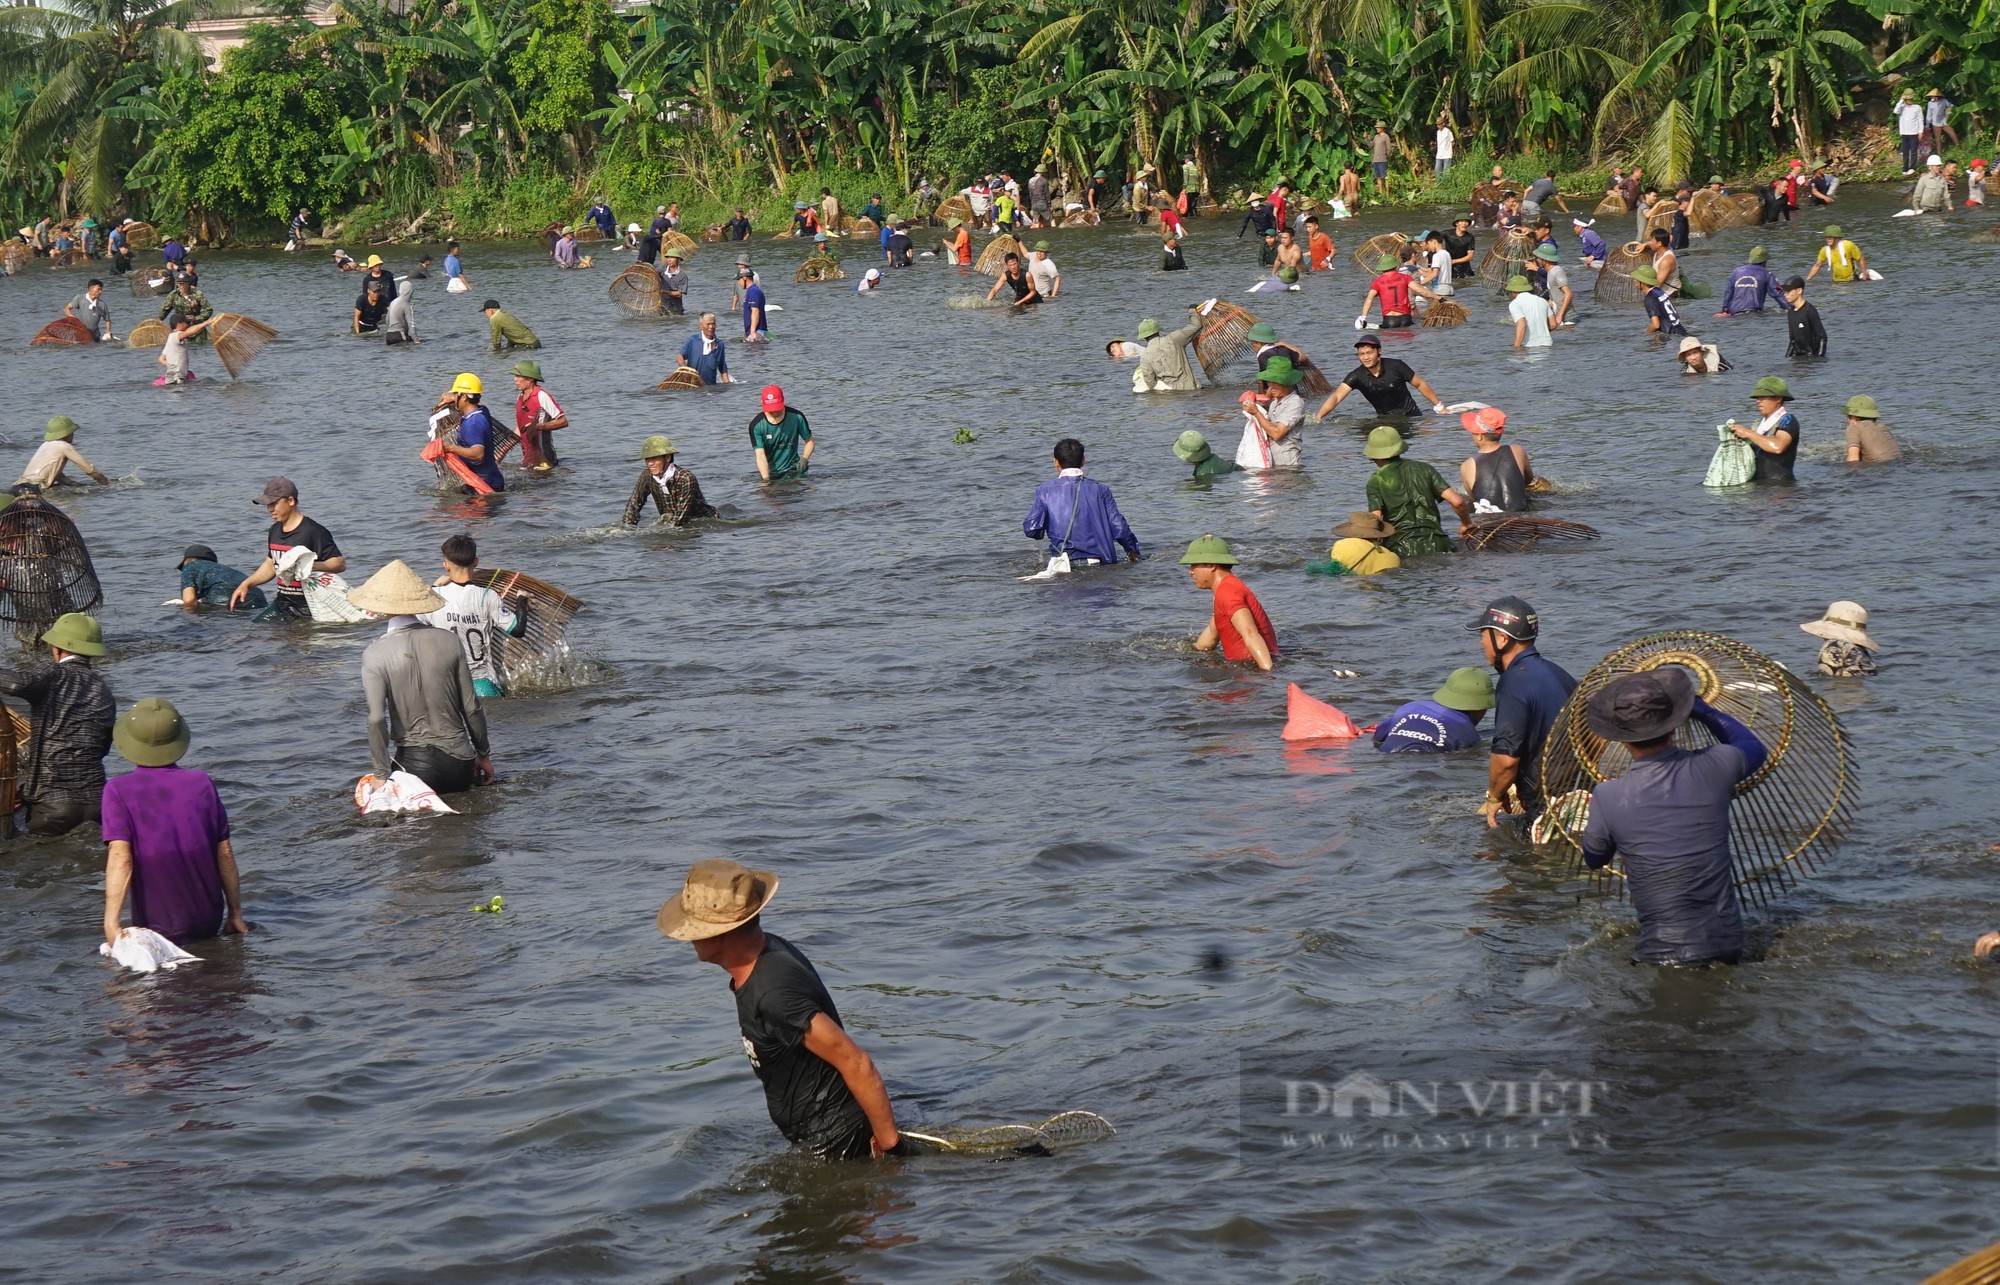 Sau một hồi trống lớn, hơn 600 người ào xuống bàu Mực ở Nghệ An trổ tài đánh cá bằng nơm - Ảnh 9.